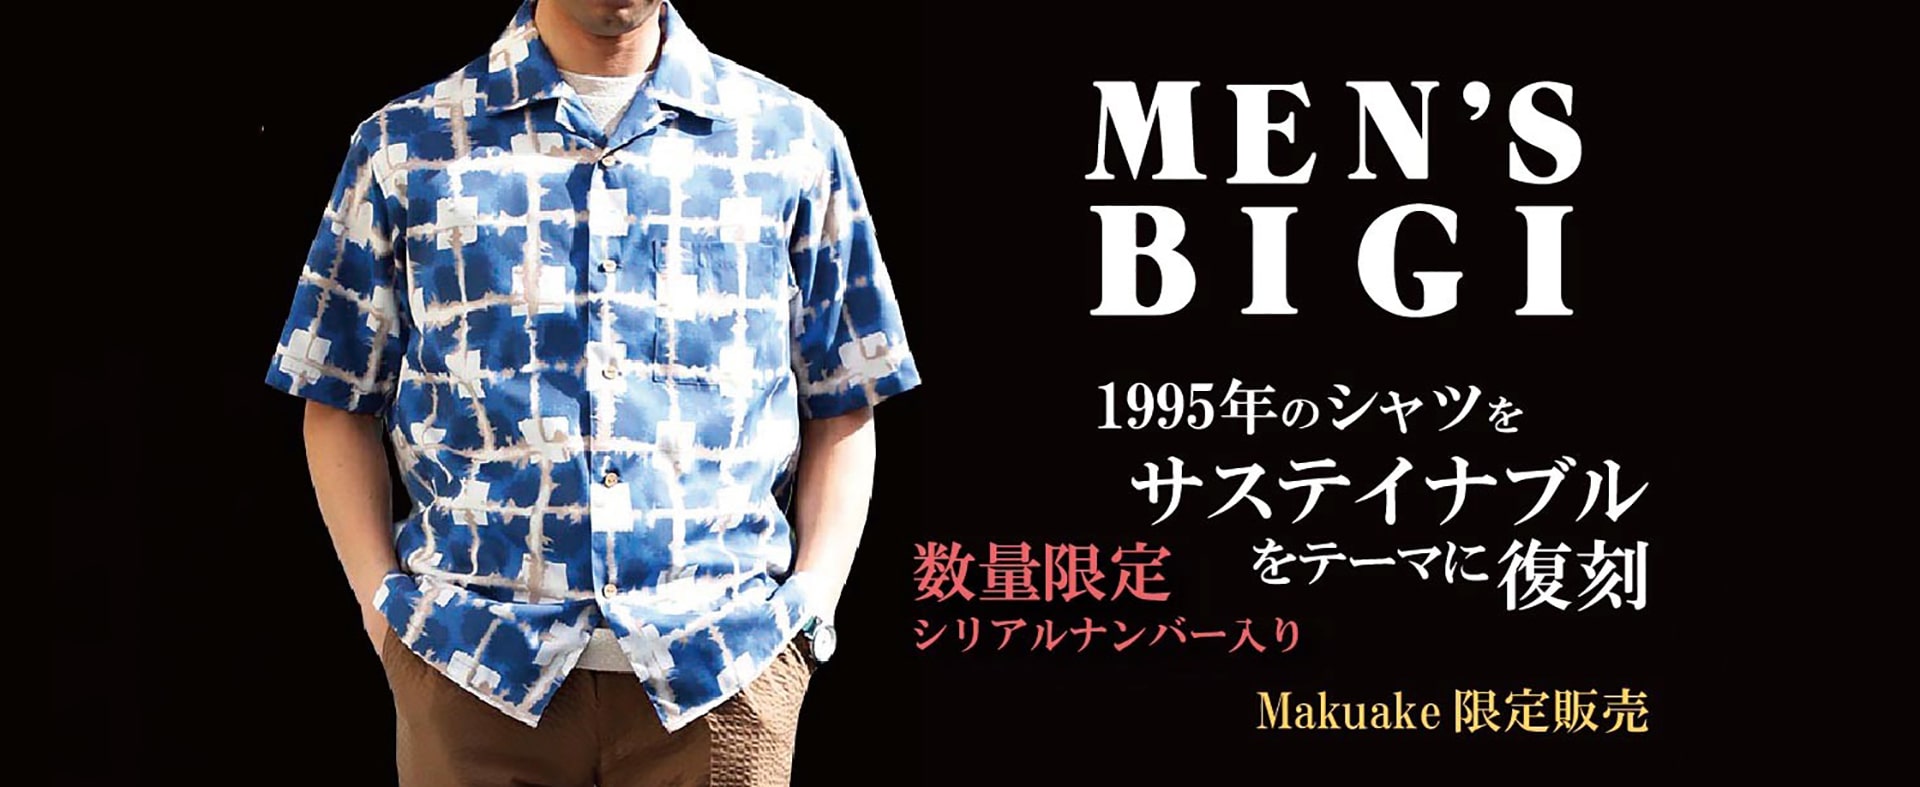 メンズファッション通販 Men S Bigi Online Store メンズビギ オンラインストア